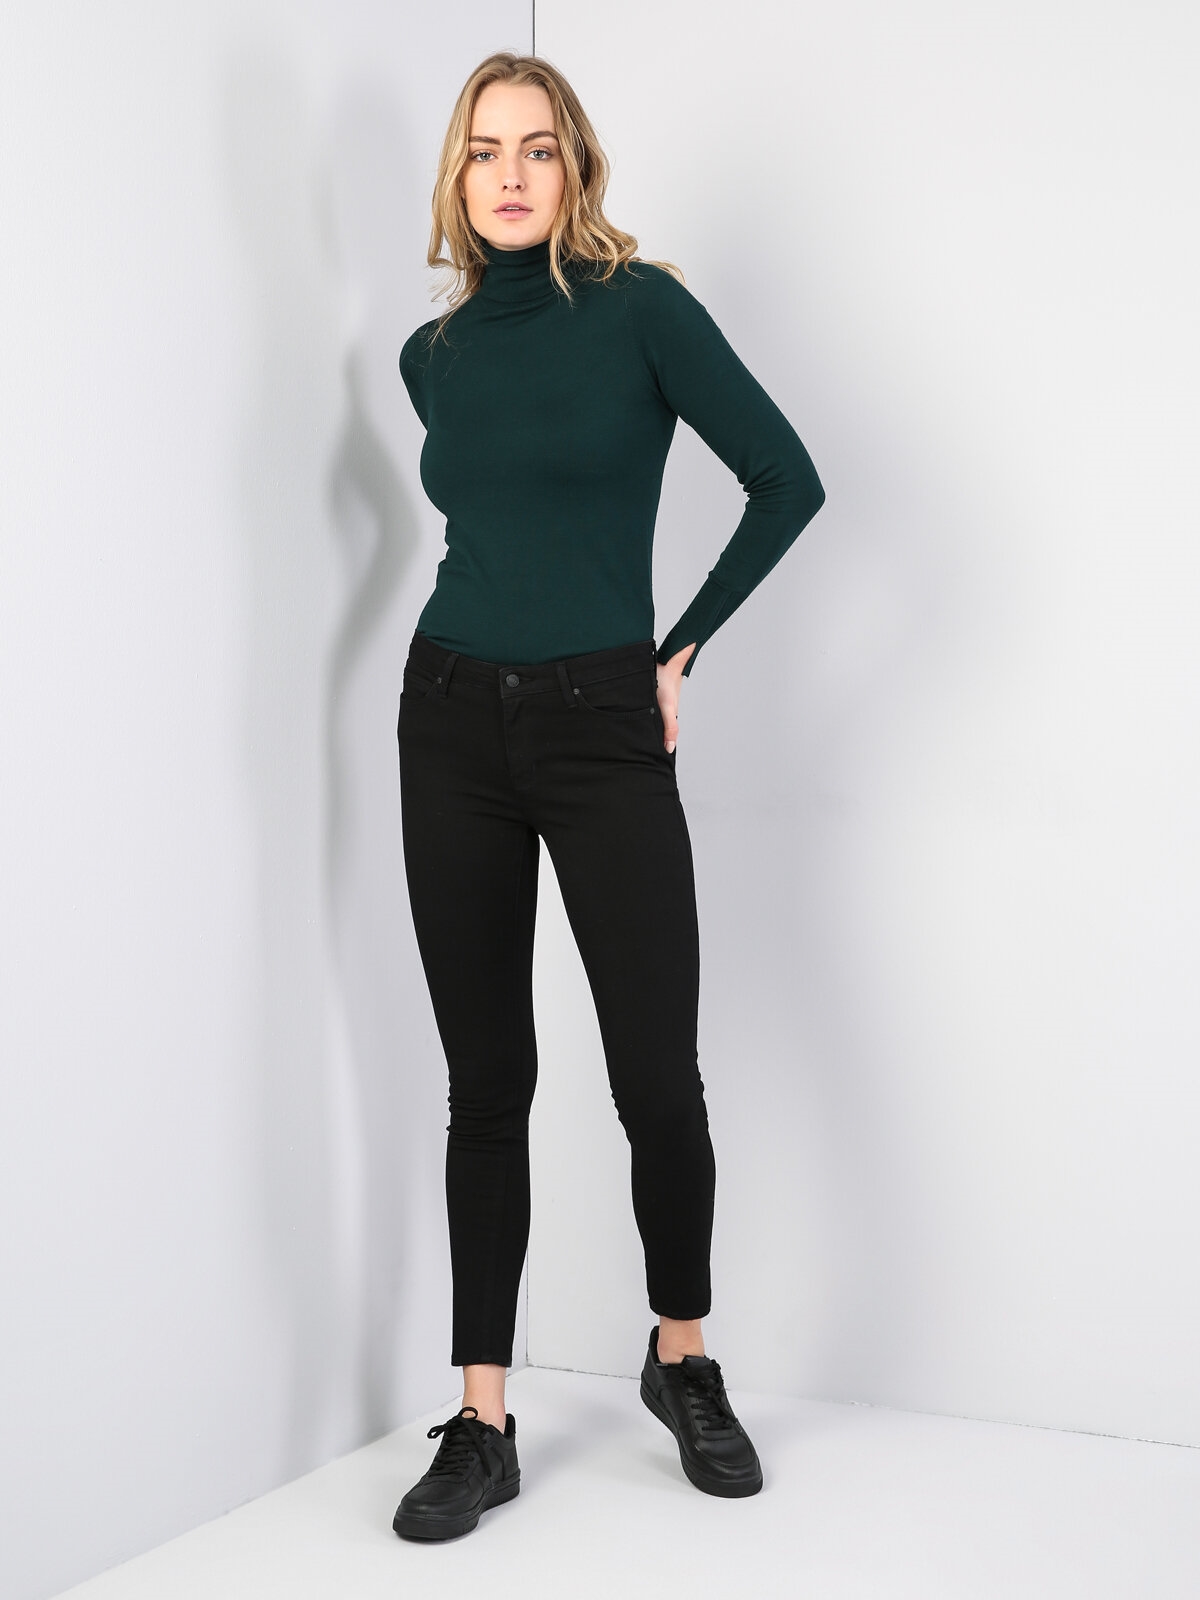 Afficher les détails de 759 Lara Pantalon En Jean Noir Taille Moyenne À Jambe Étroite Et Coupe Super Slim Pour Femme